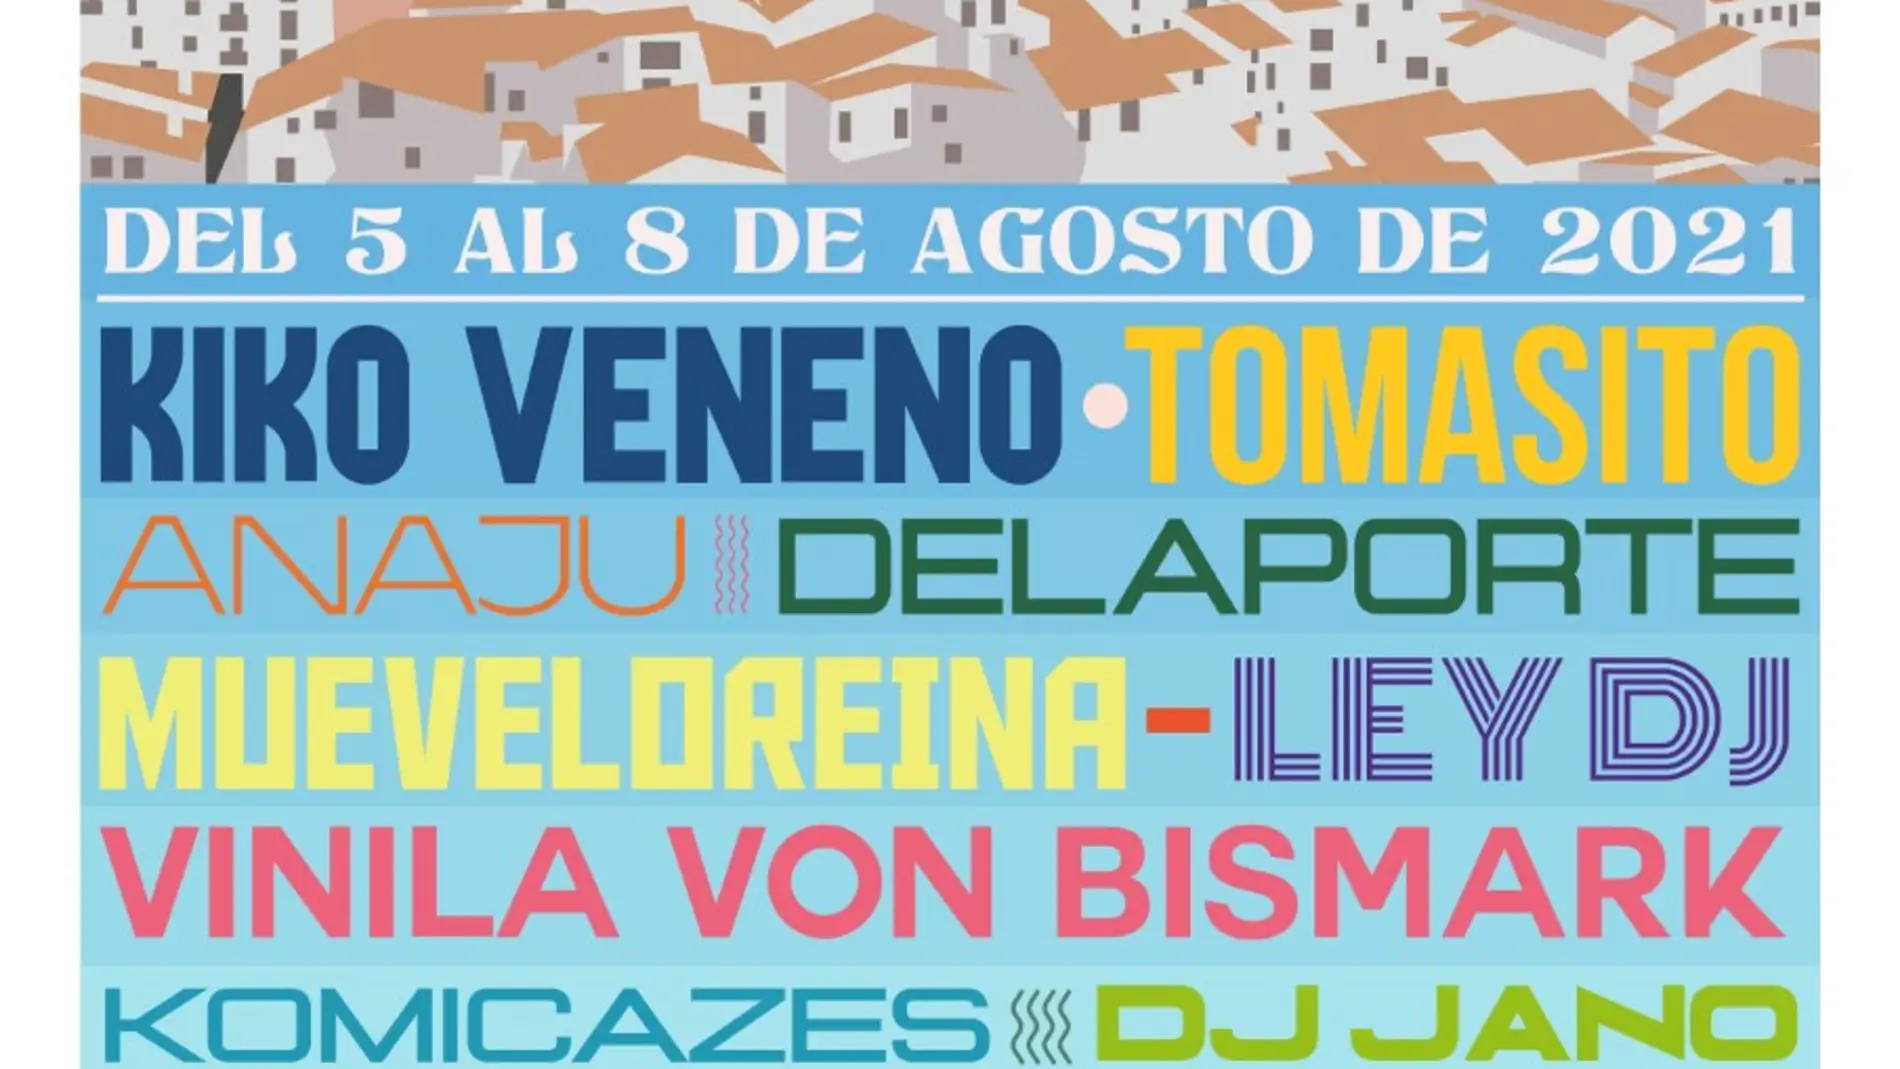 El MIL Festival se celebrará del 5 del 8 de agosto en Mora de Rubielos